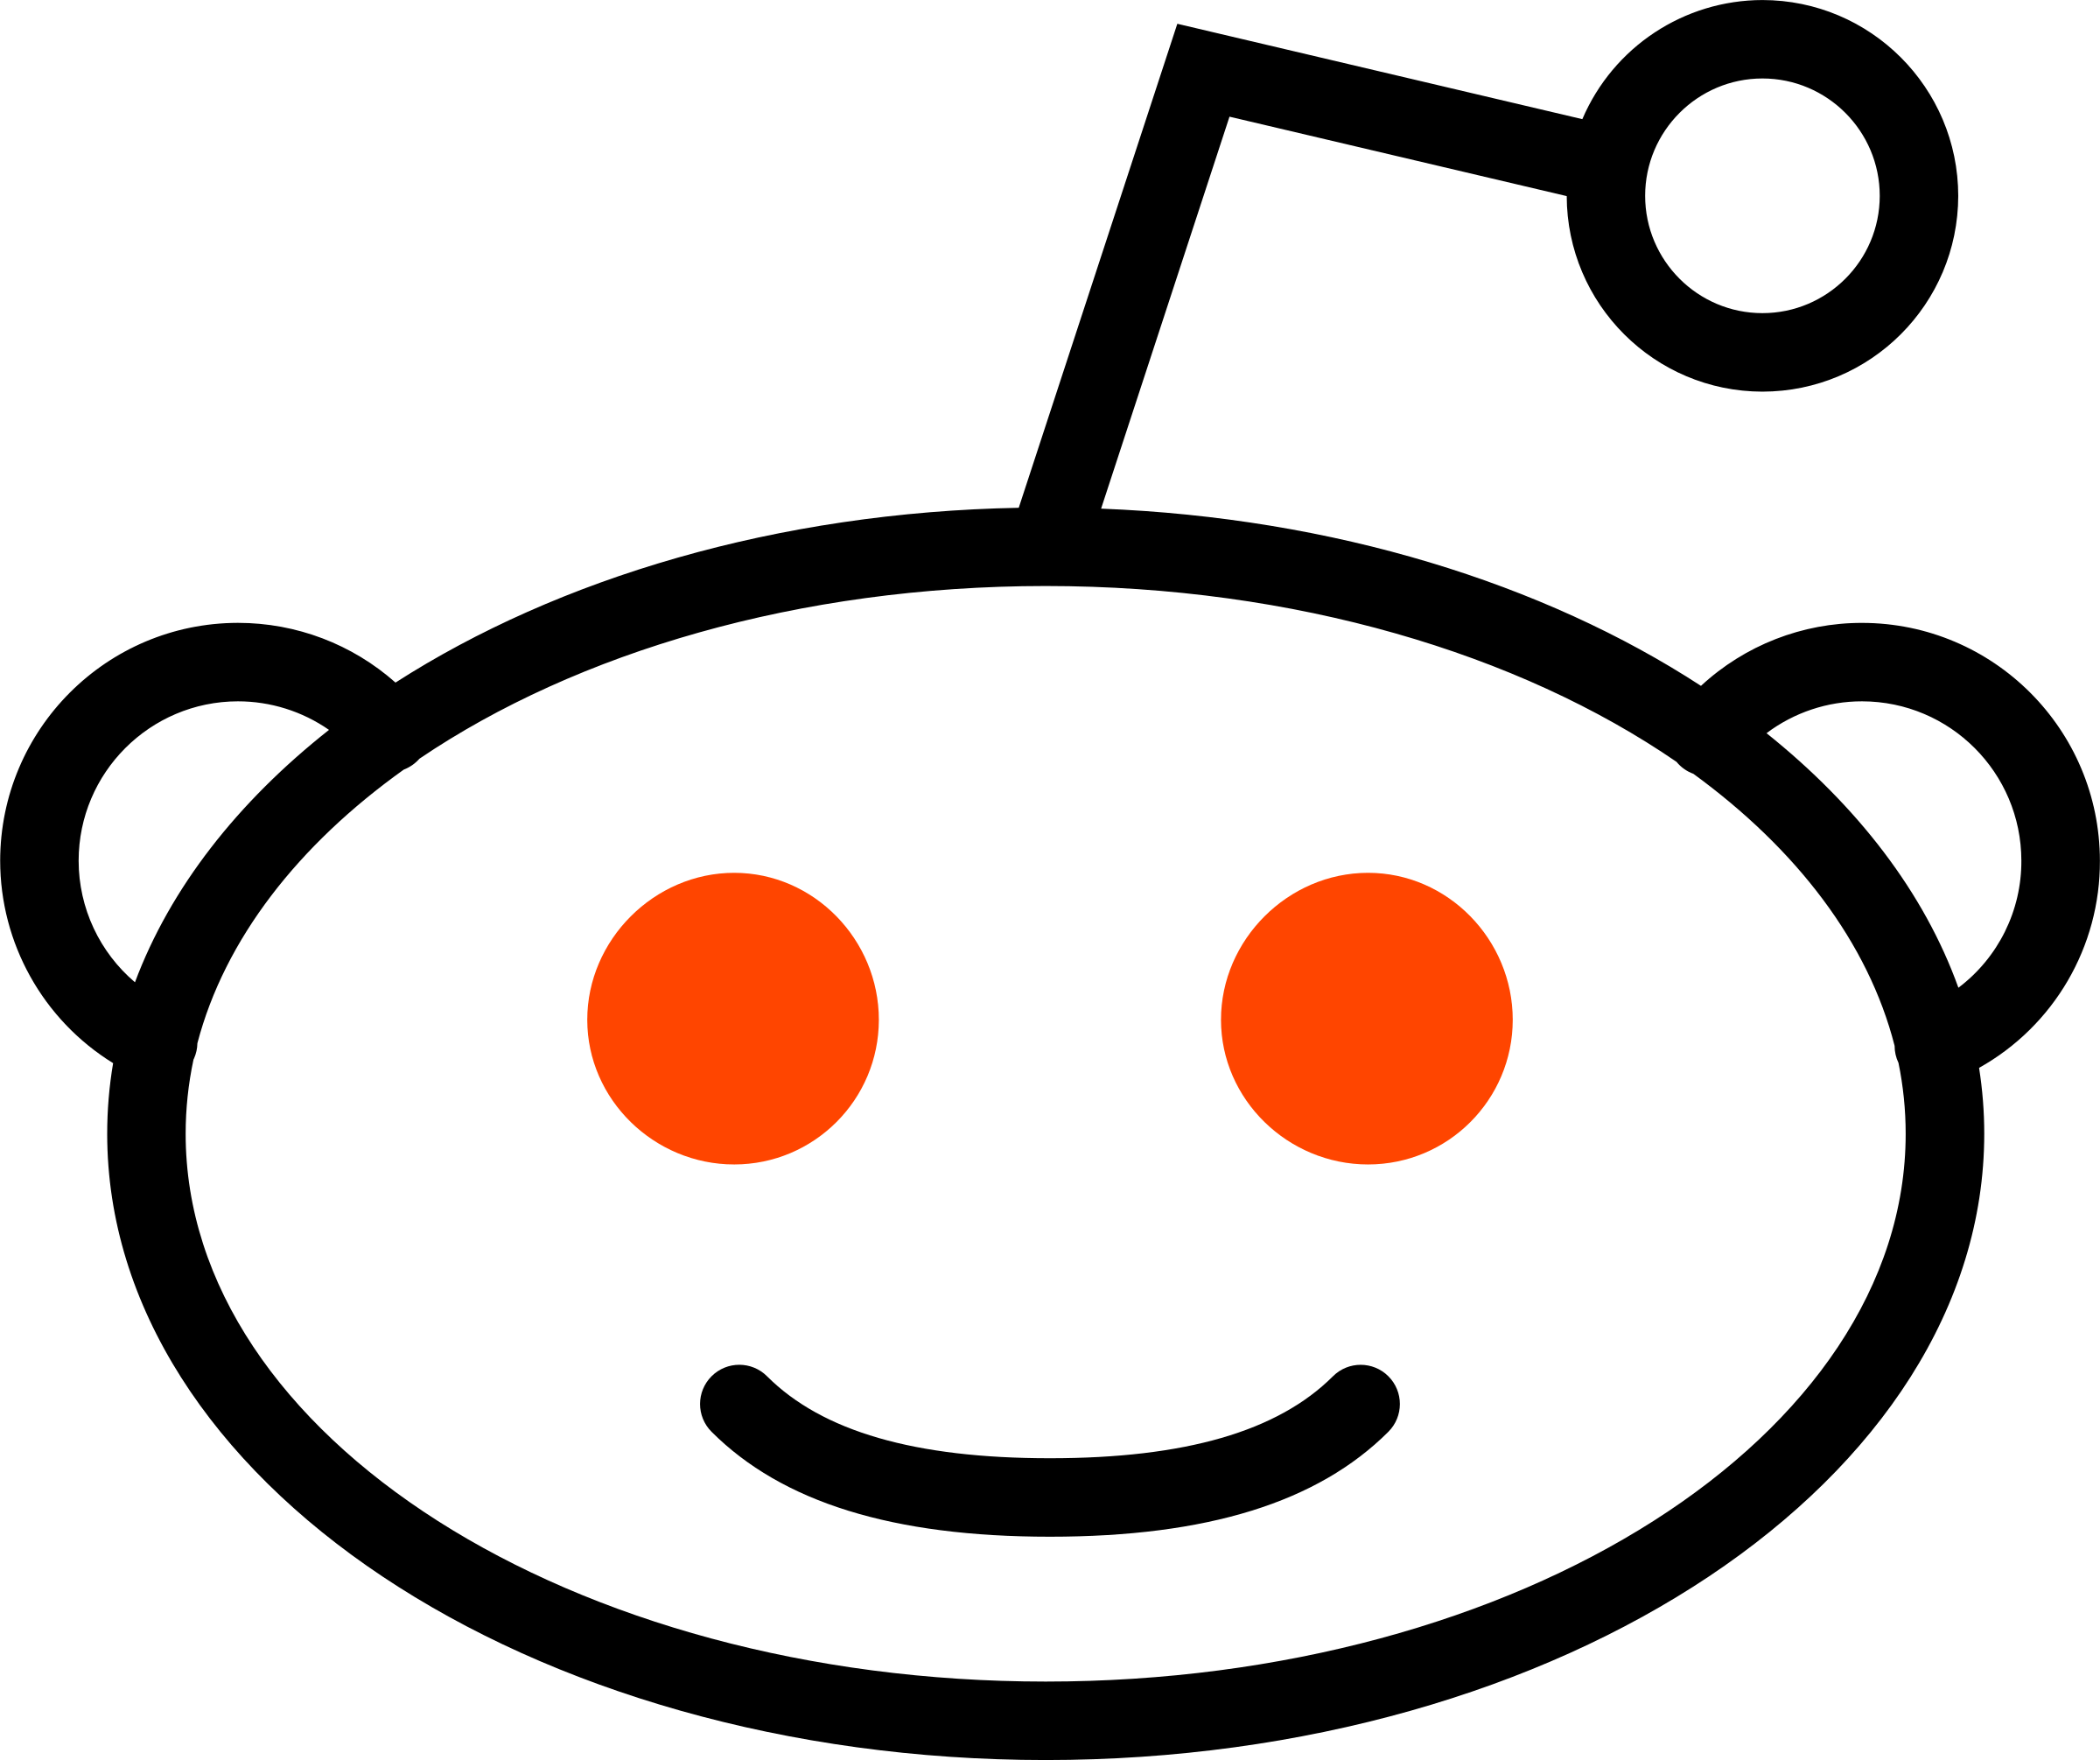 Redit Logo - Reddit icon Logo PNG Transparent & SVG Vector